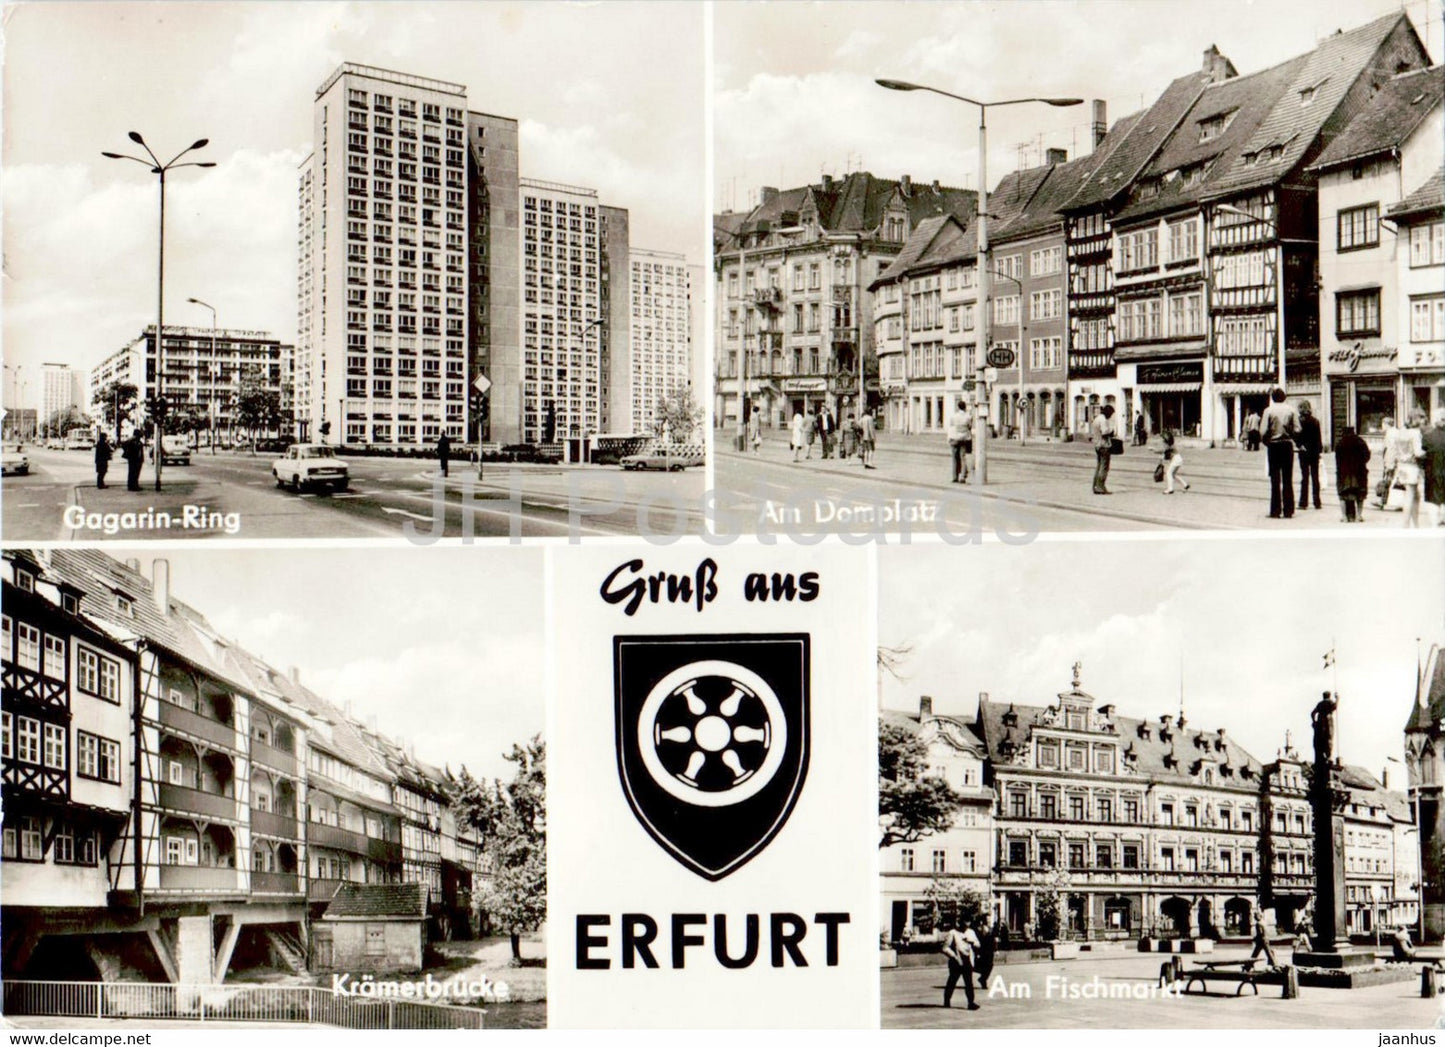 Gruss aus Erfurt - Gagarin Ring - Am Domplatz - Kramerbrucke - Am Fischmarkt - Germany DDR - used - JH Postcards